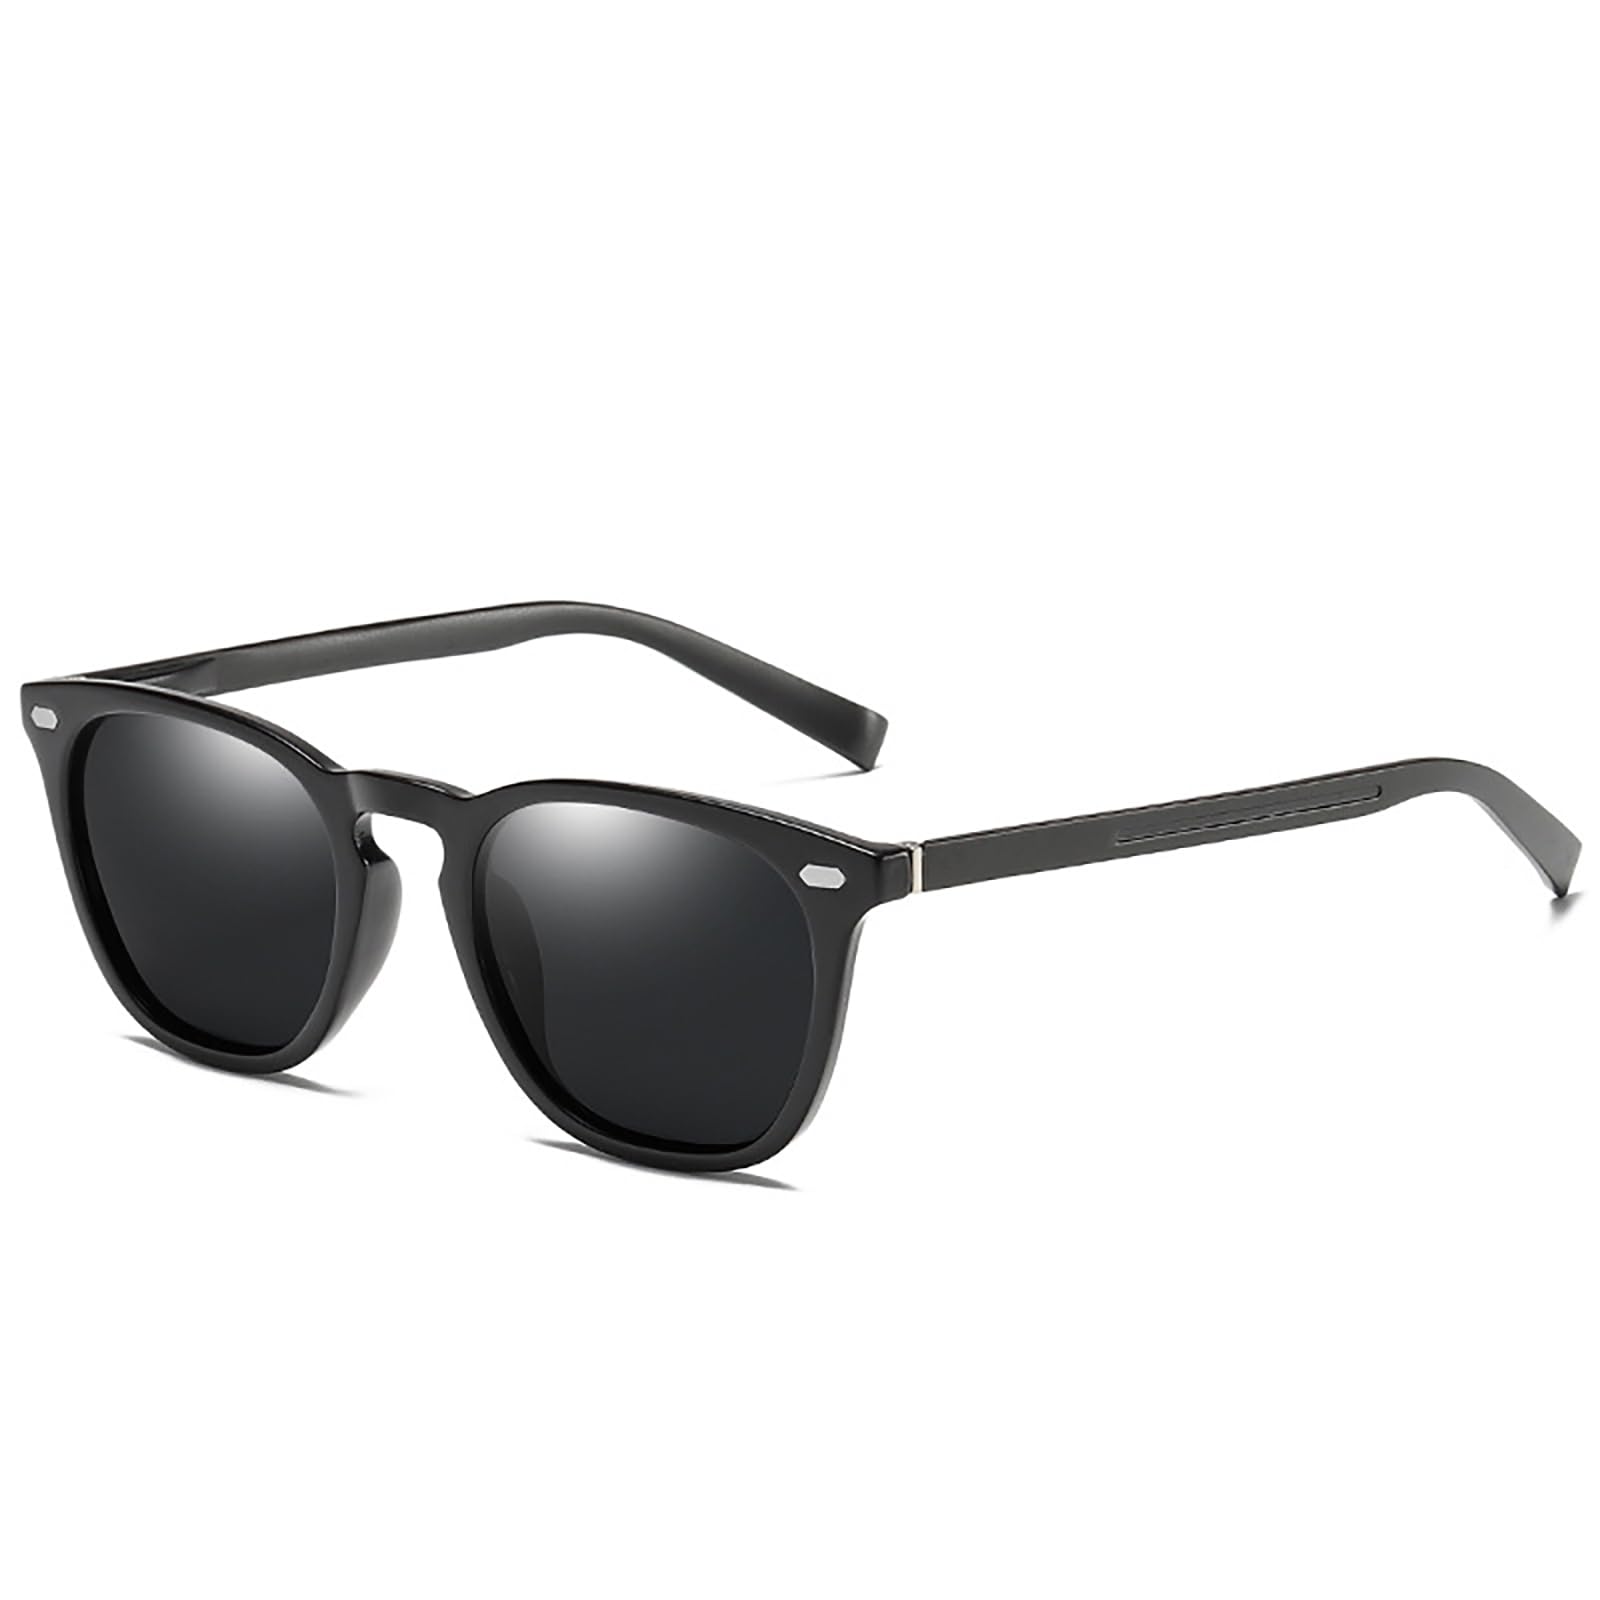 [MAIVARDAY] サングラス メンズ スポーツ レディース 偏光 運転用 ウェリントン型 タイプ 超弾性 TR90素材 超軽量 UV400 カット おしゃれ ファッション sunglasses for men 黒